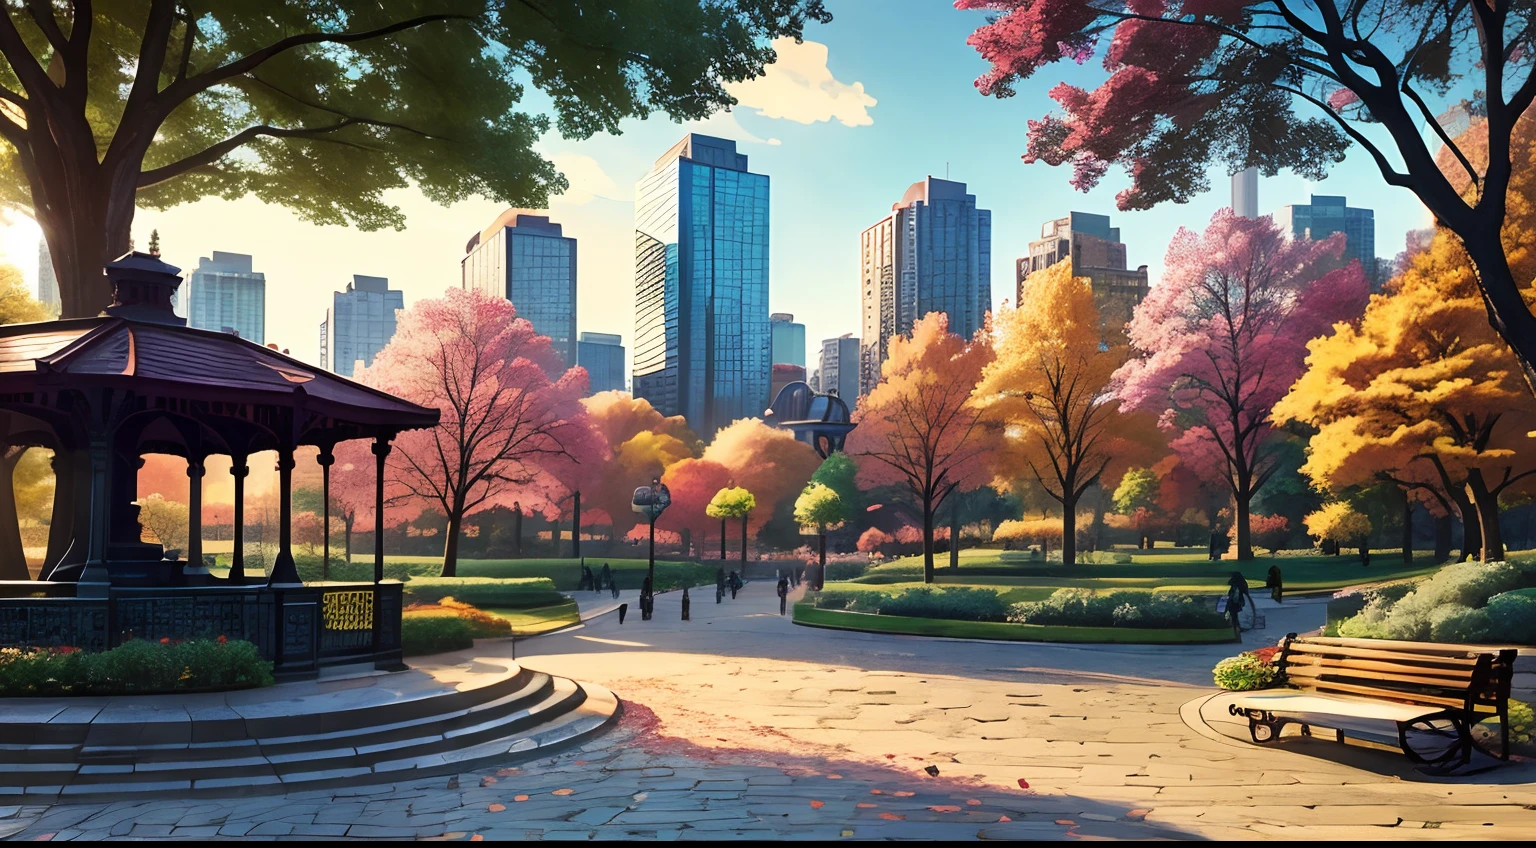 (Лучшее качество:1.0), a vibrant park in the middle of a яркий cityscape, деревья, скамейки, 1 статуя, 1 беседка, Брусчатые дорожки, стиль комиксов, яркий